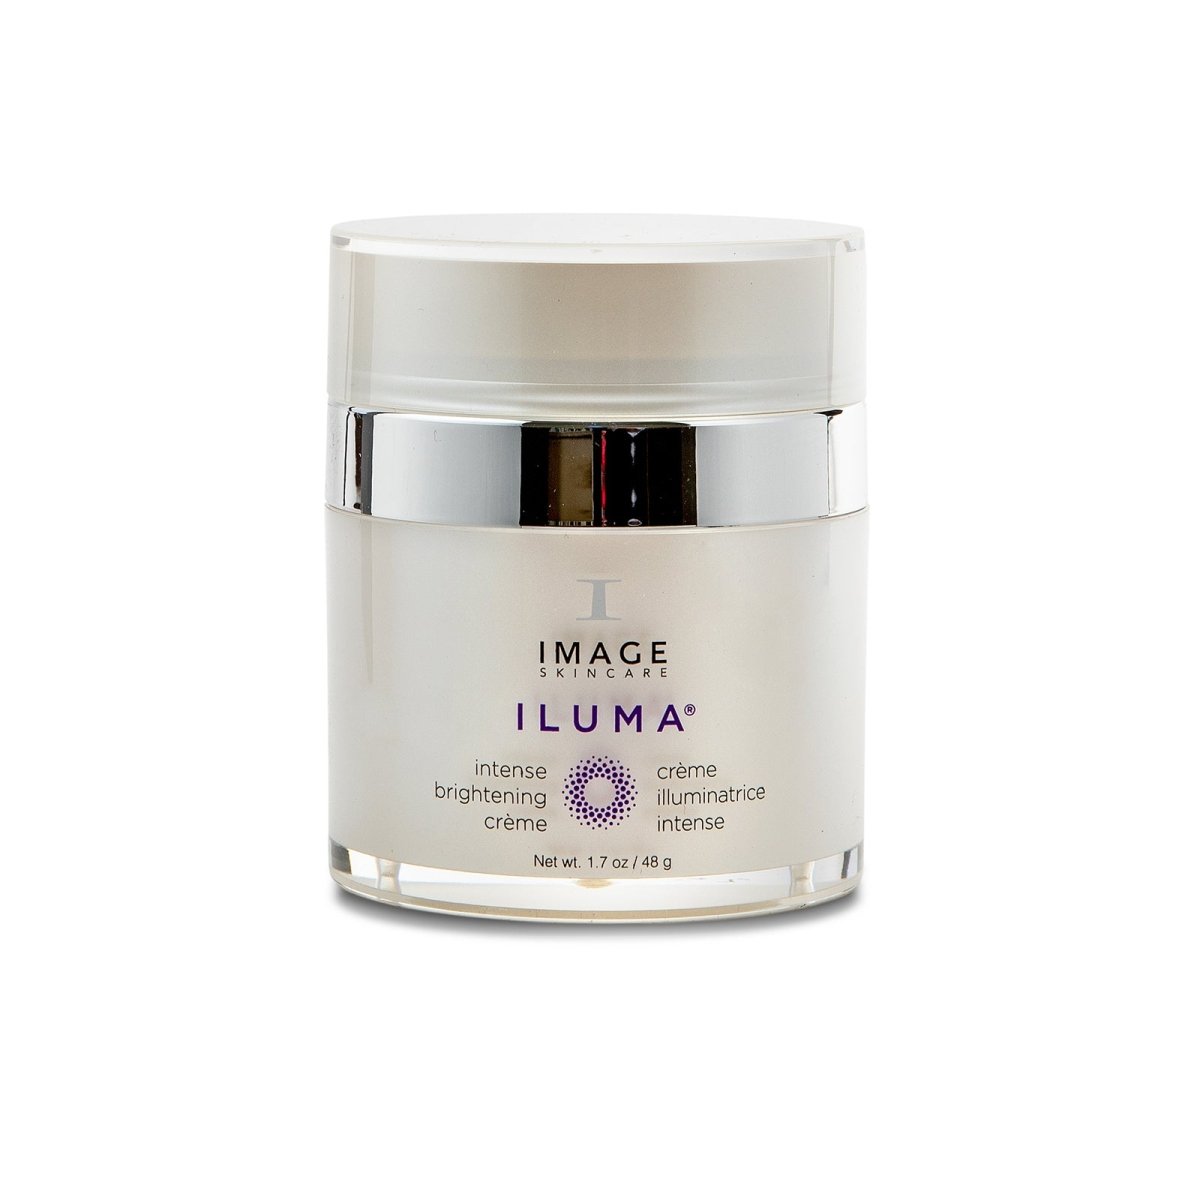 IMAGE Skincare ILUMA™ Intense Brightening Crème - SkincareEssentials